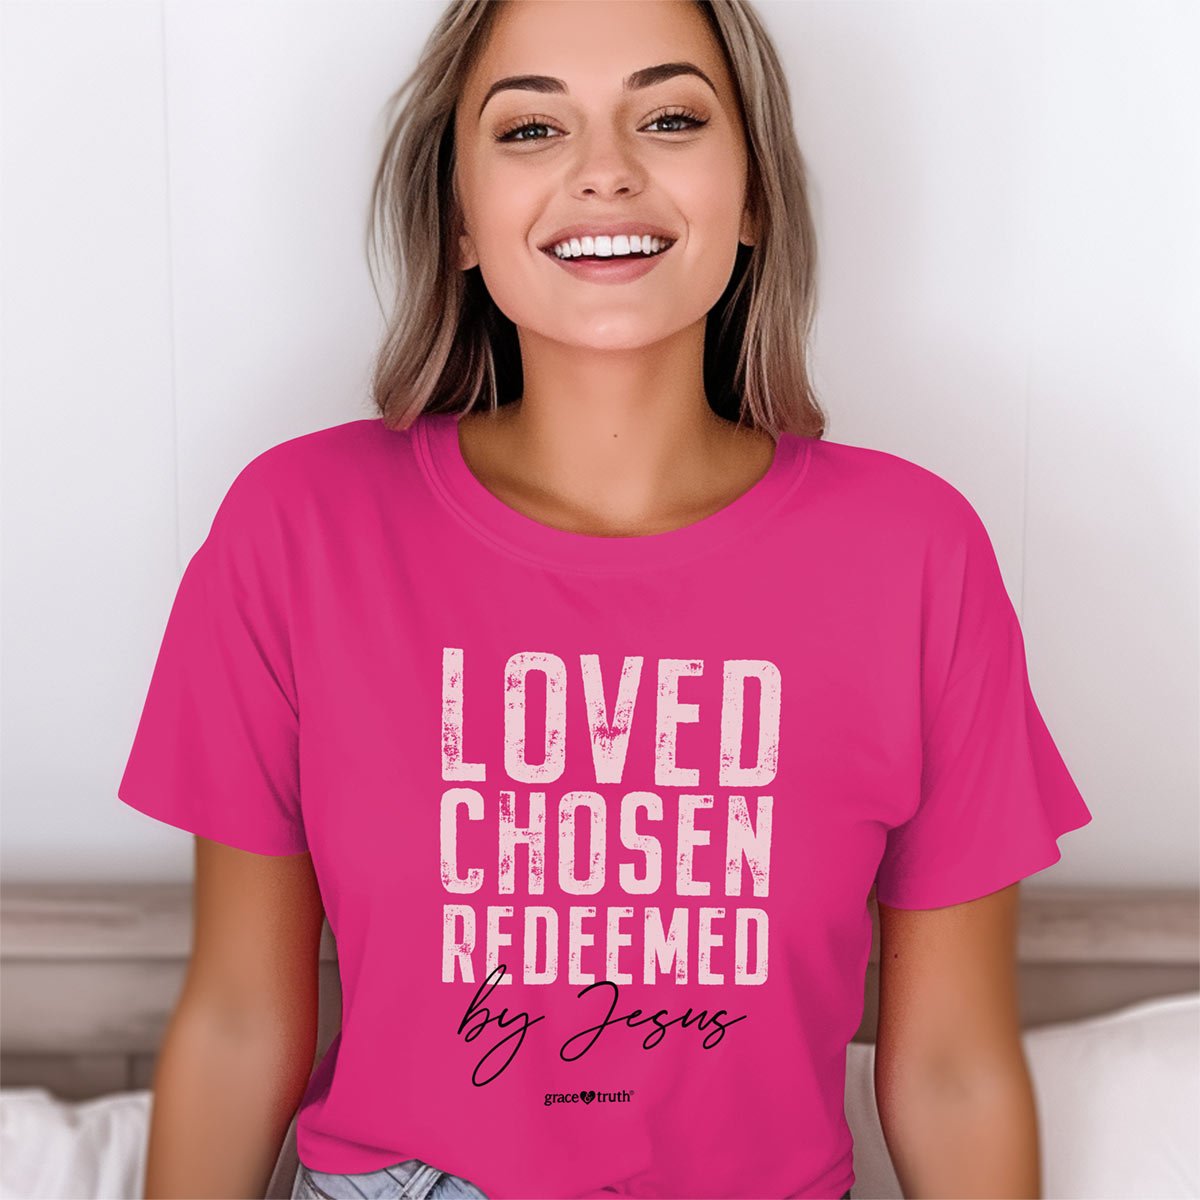 grace & truth Womens T-Shirt Loved Chosen Redeemed | 2FruitBearers